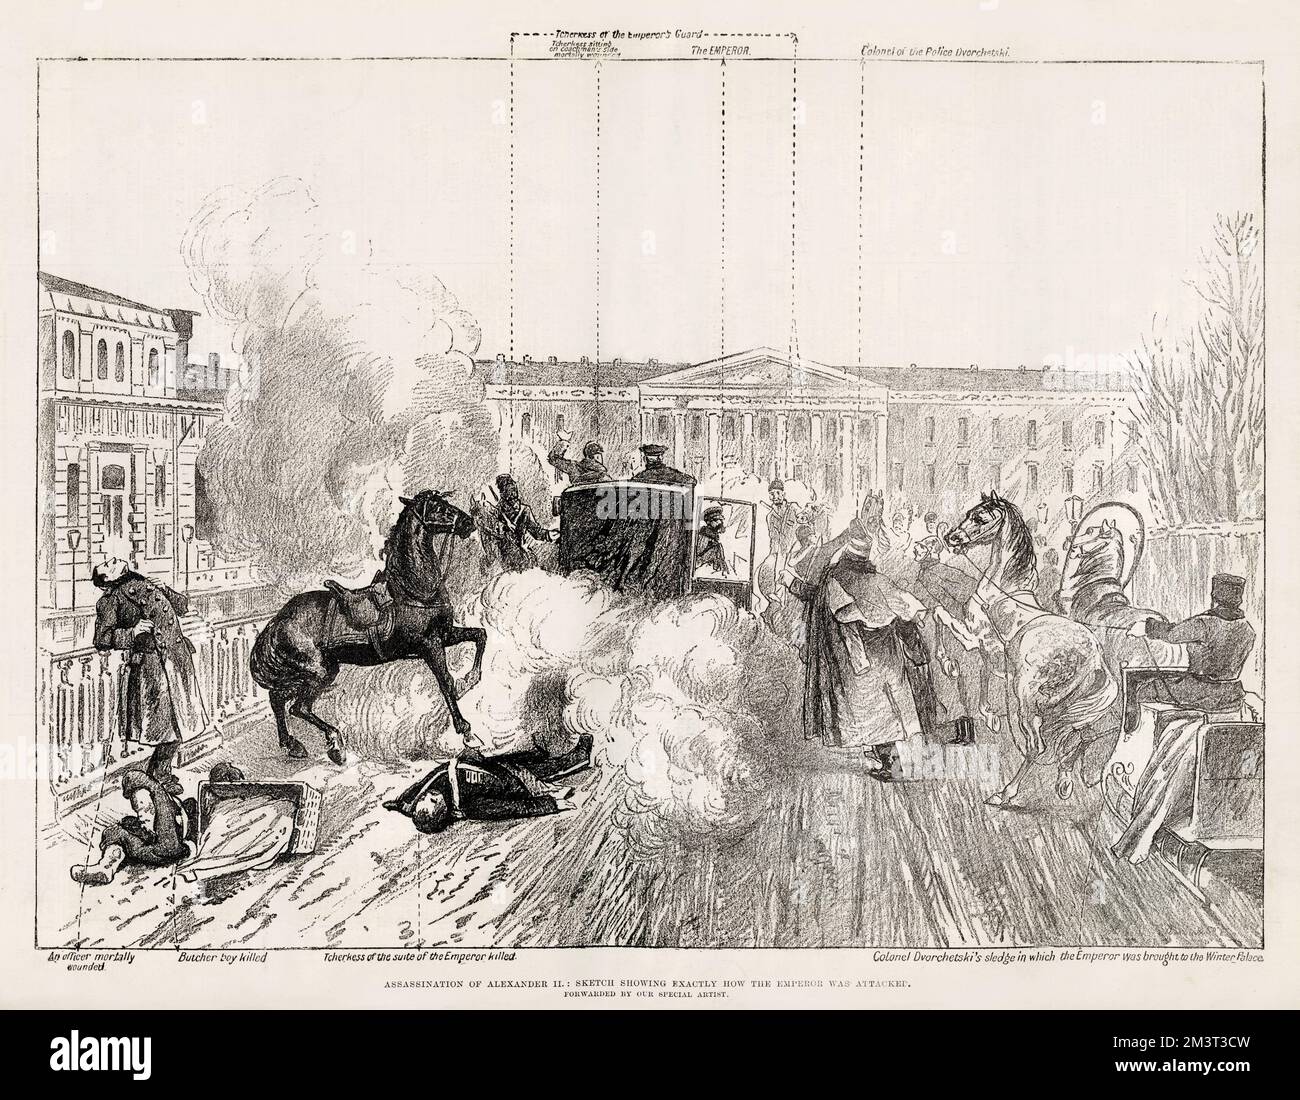 Assassinat d'Alexandre II : croquis montrant exactement comment l'empereur a été attaqué. Alexandre II, empereur de Russie, assassiné à Saint-Pétersbourg le 13th mars 1881. Banque D'Images